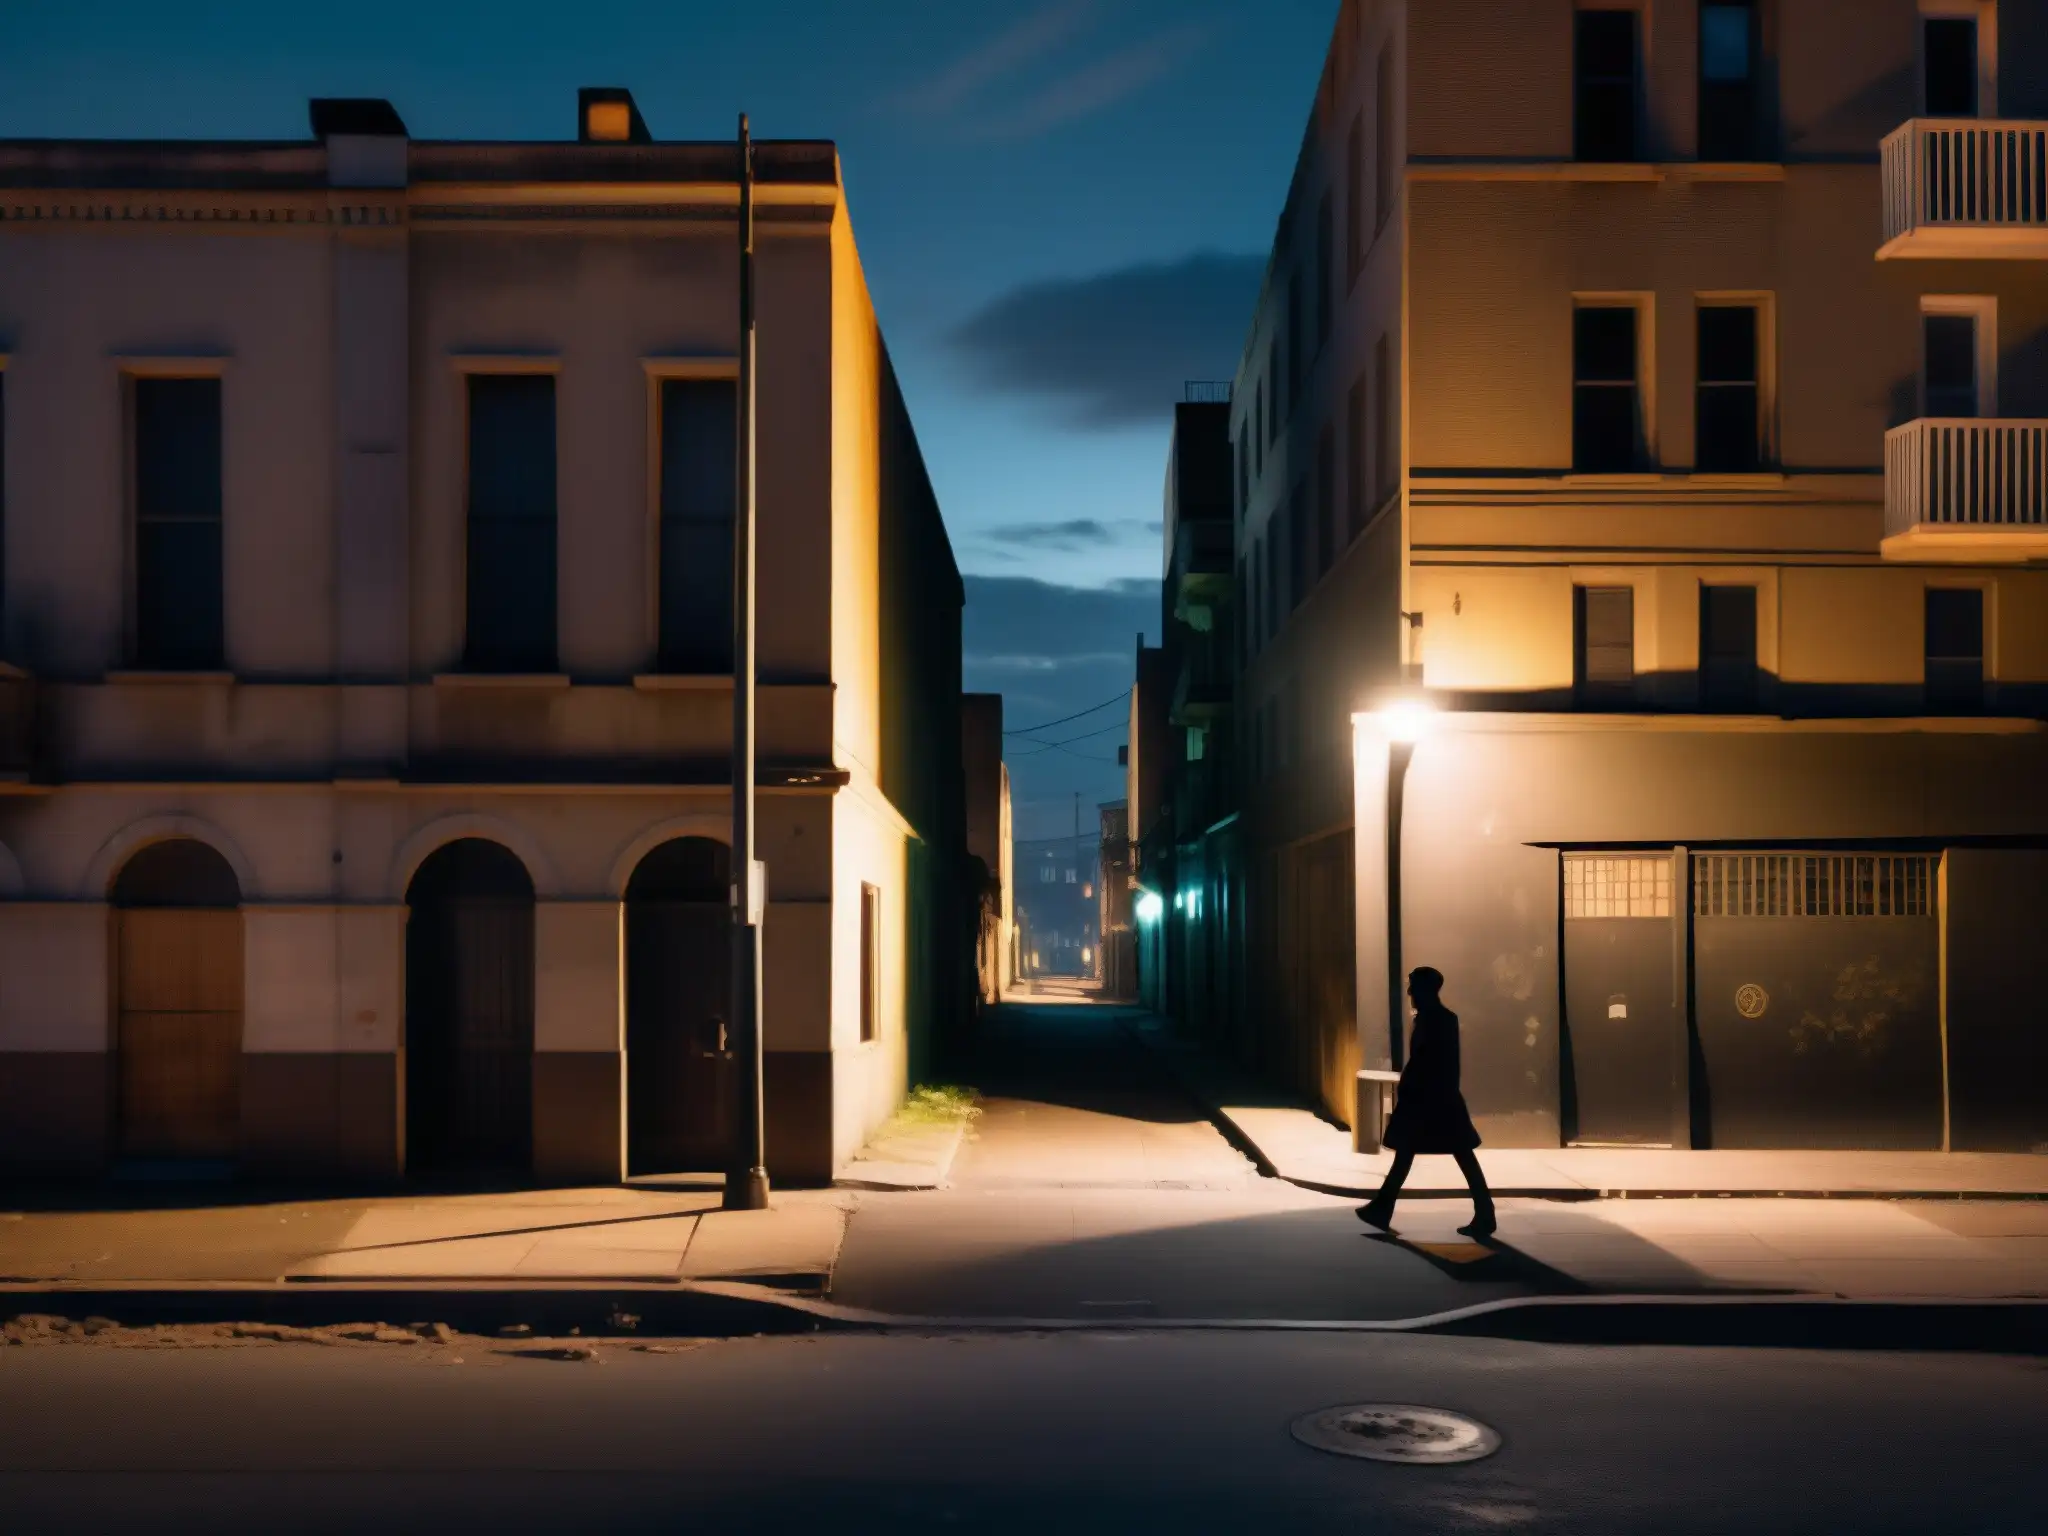 Un misterioso paseo nocturno por una calle solitaria de la ciudad, envuelto en sombras y misterio